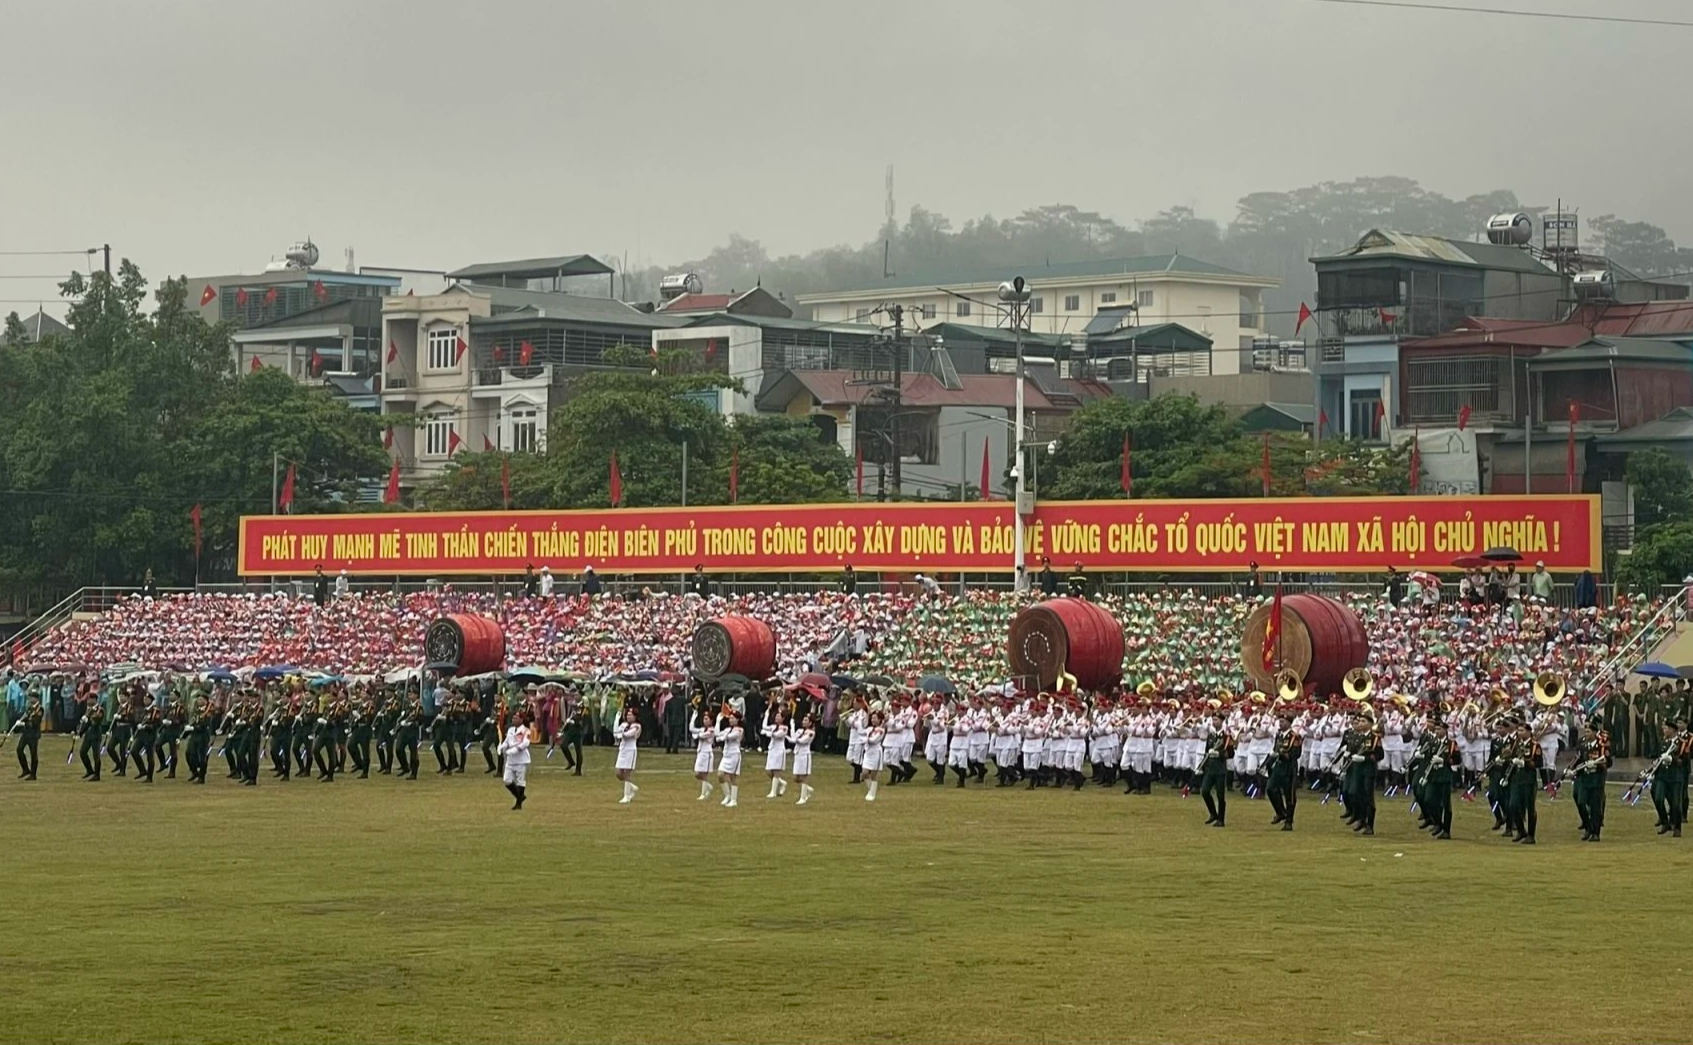 Mưa trút xuống sân vận động tỉnh Điện Biên trước giờ diễn ra buổi lễ